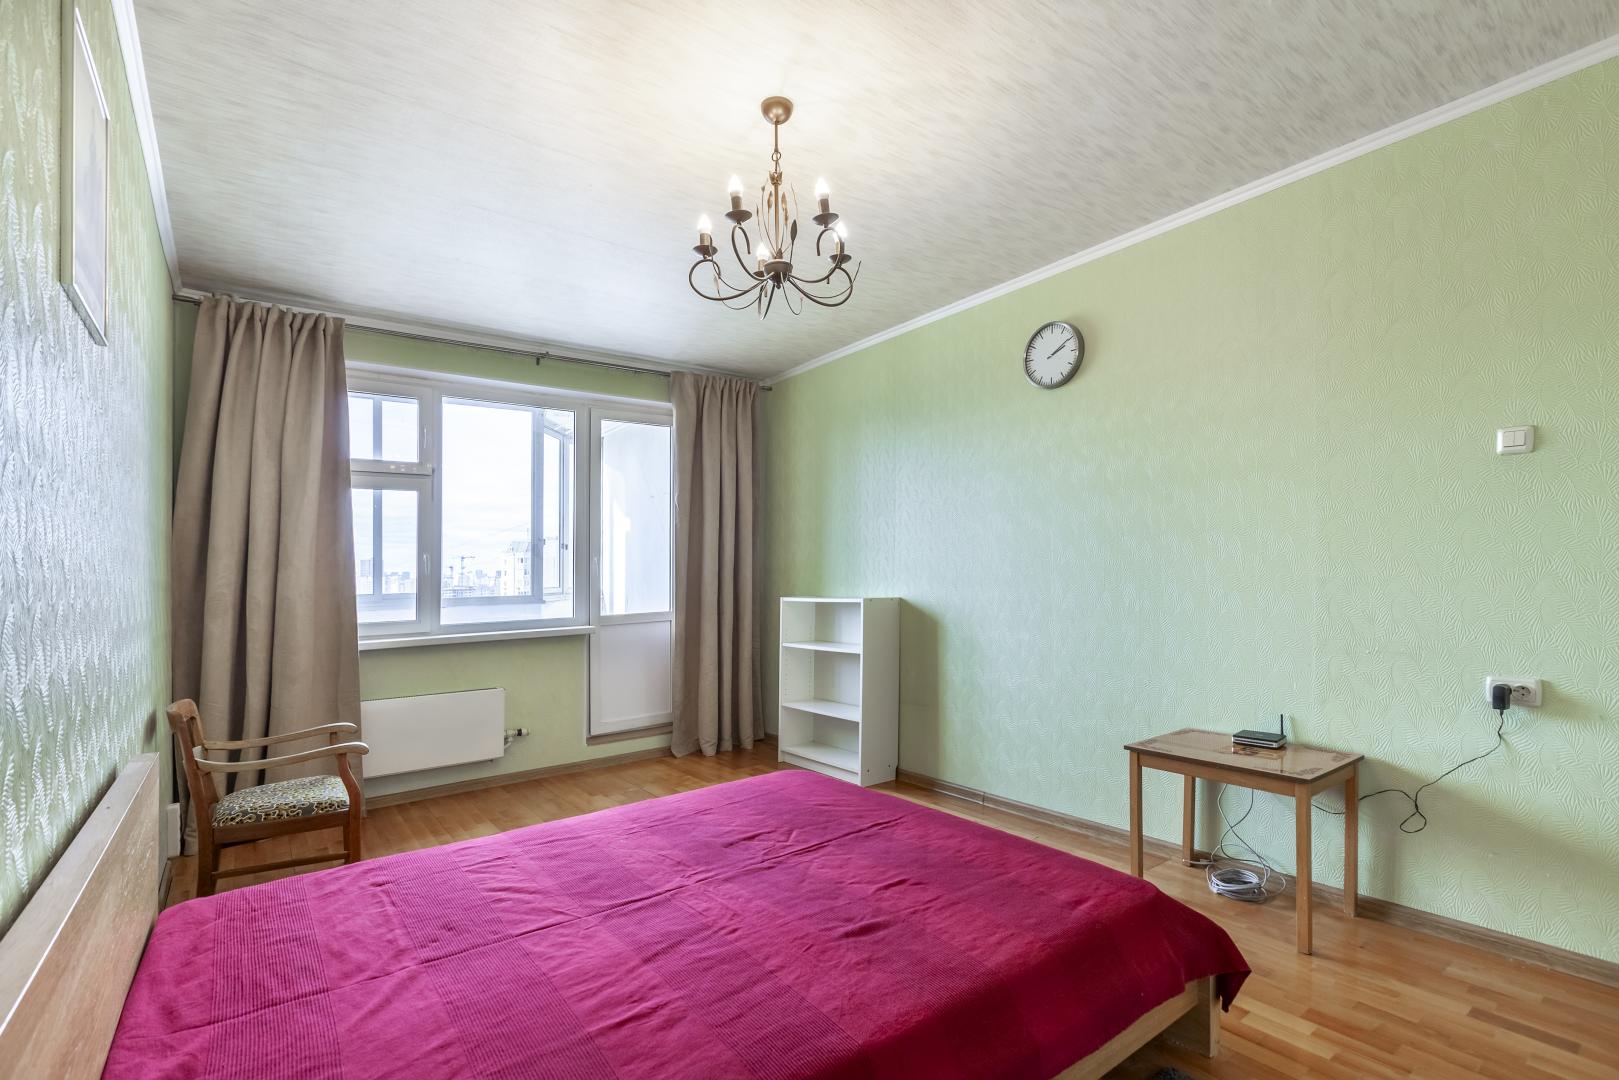 Продам квартиру в Москве по адресу Бескудниковский бульвар, 32к6, площадь 782 квм Недвижимость Москва (Россия) м